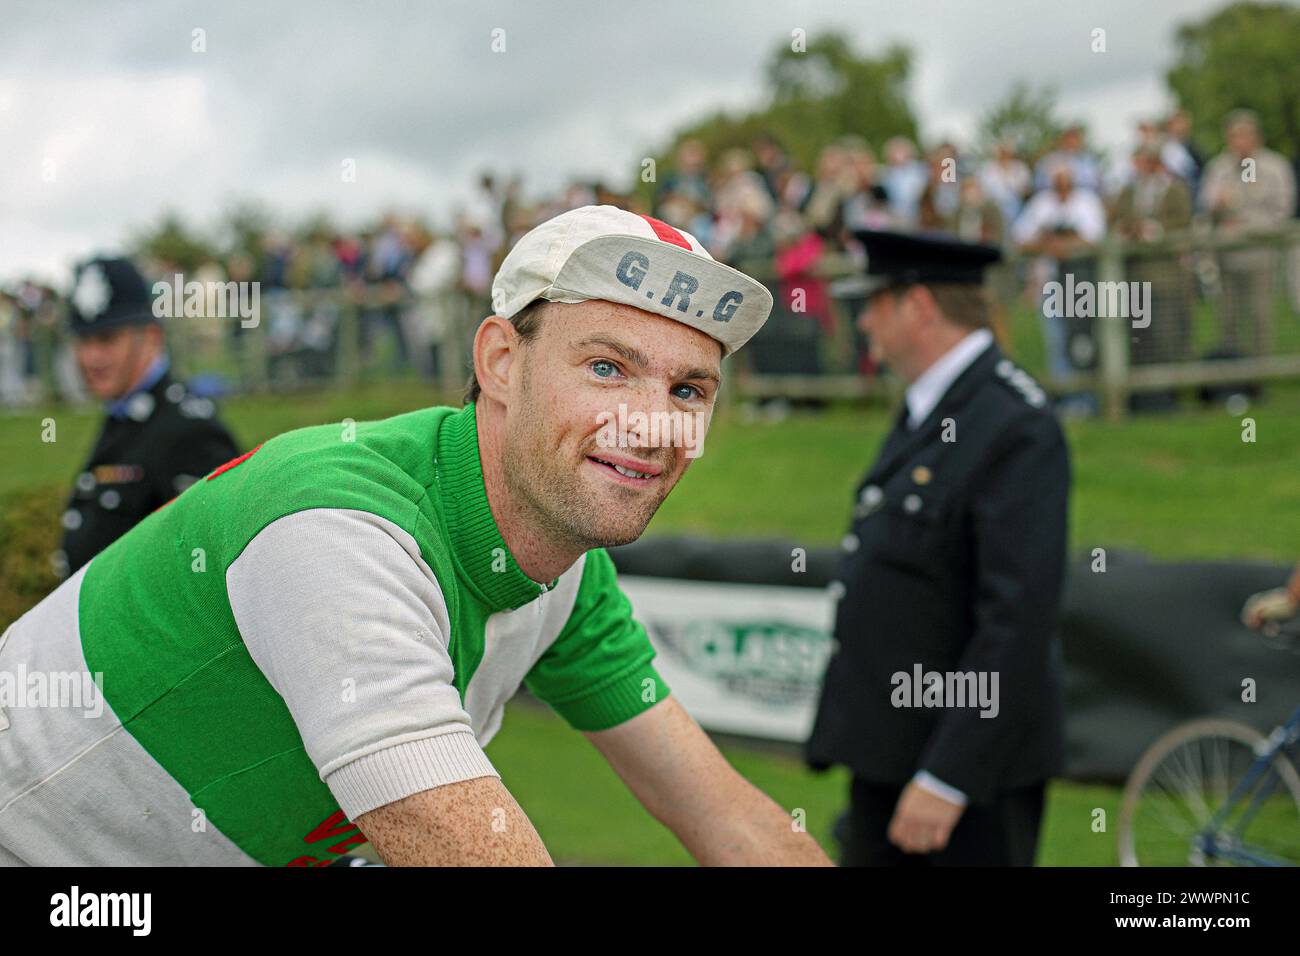 Tour de France retro racing cyclist at Goodwood Revival Tour de France Stock Photo